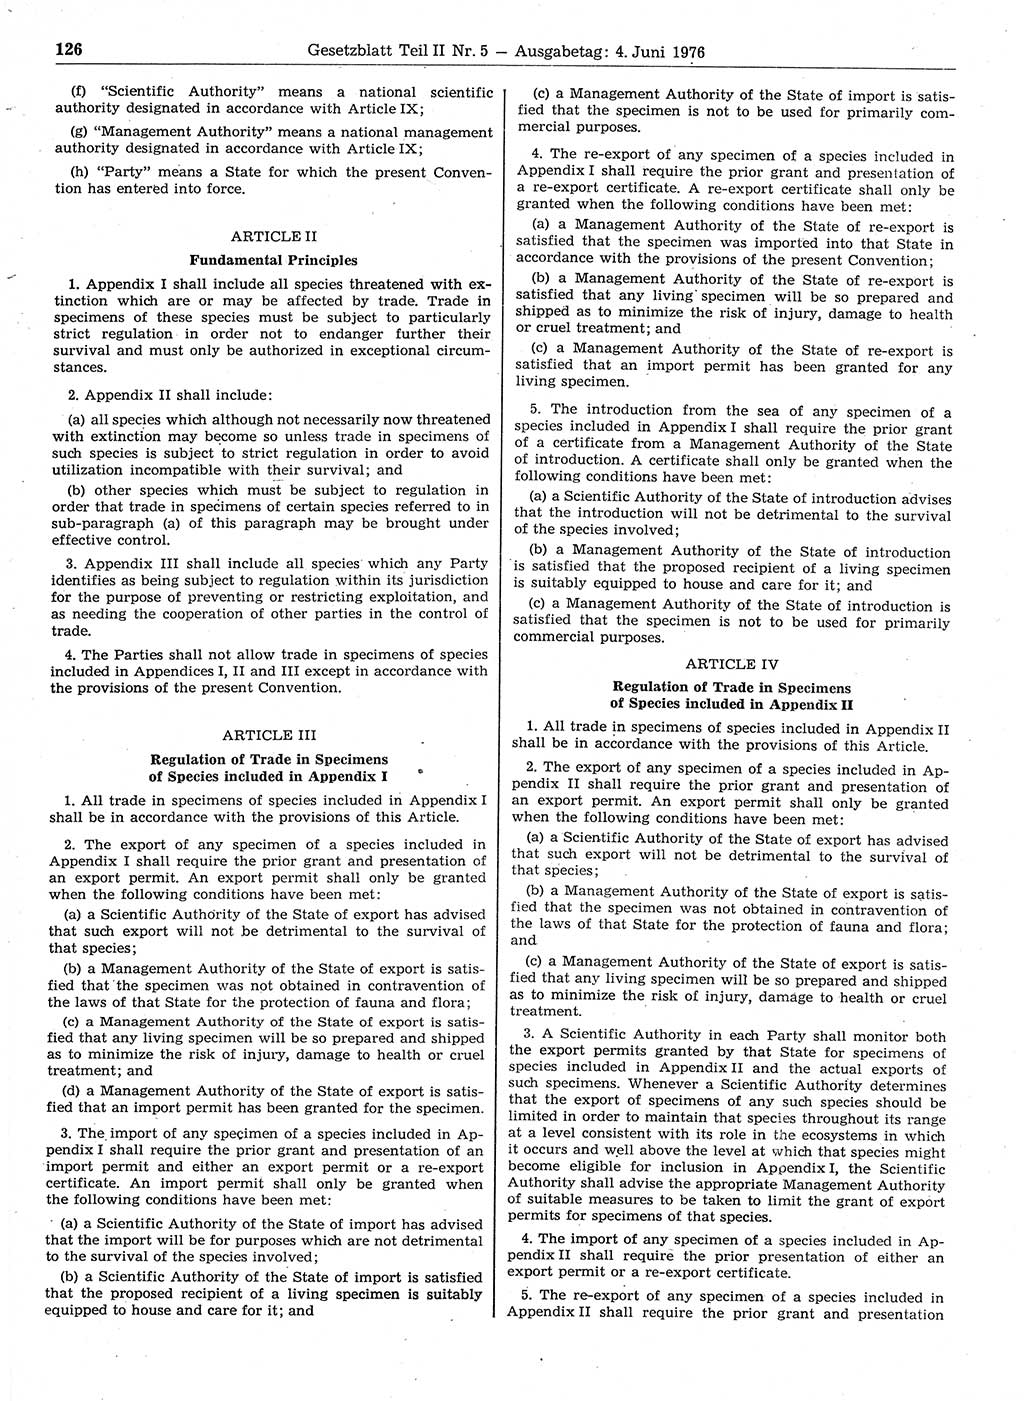 Gesetzblatt (GBl.) der Deutschen Demokratischen Republik (DDR) Teil ⅠⅠ 1976, Seite 126 (GBl. DDR ⅠⅠ 1976, S. 126)